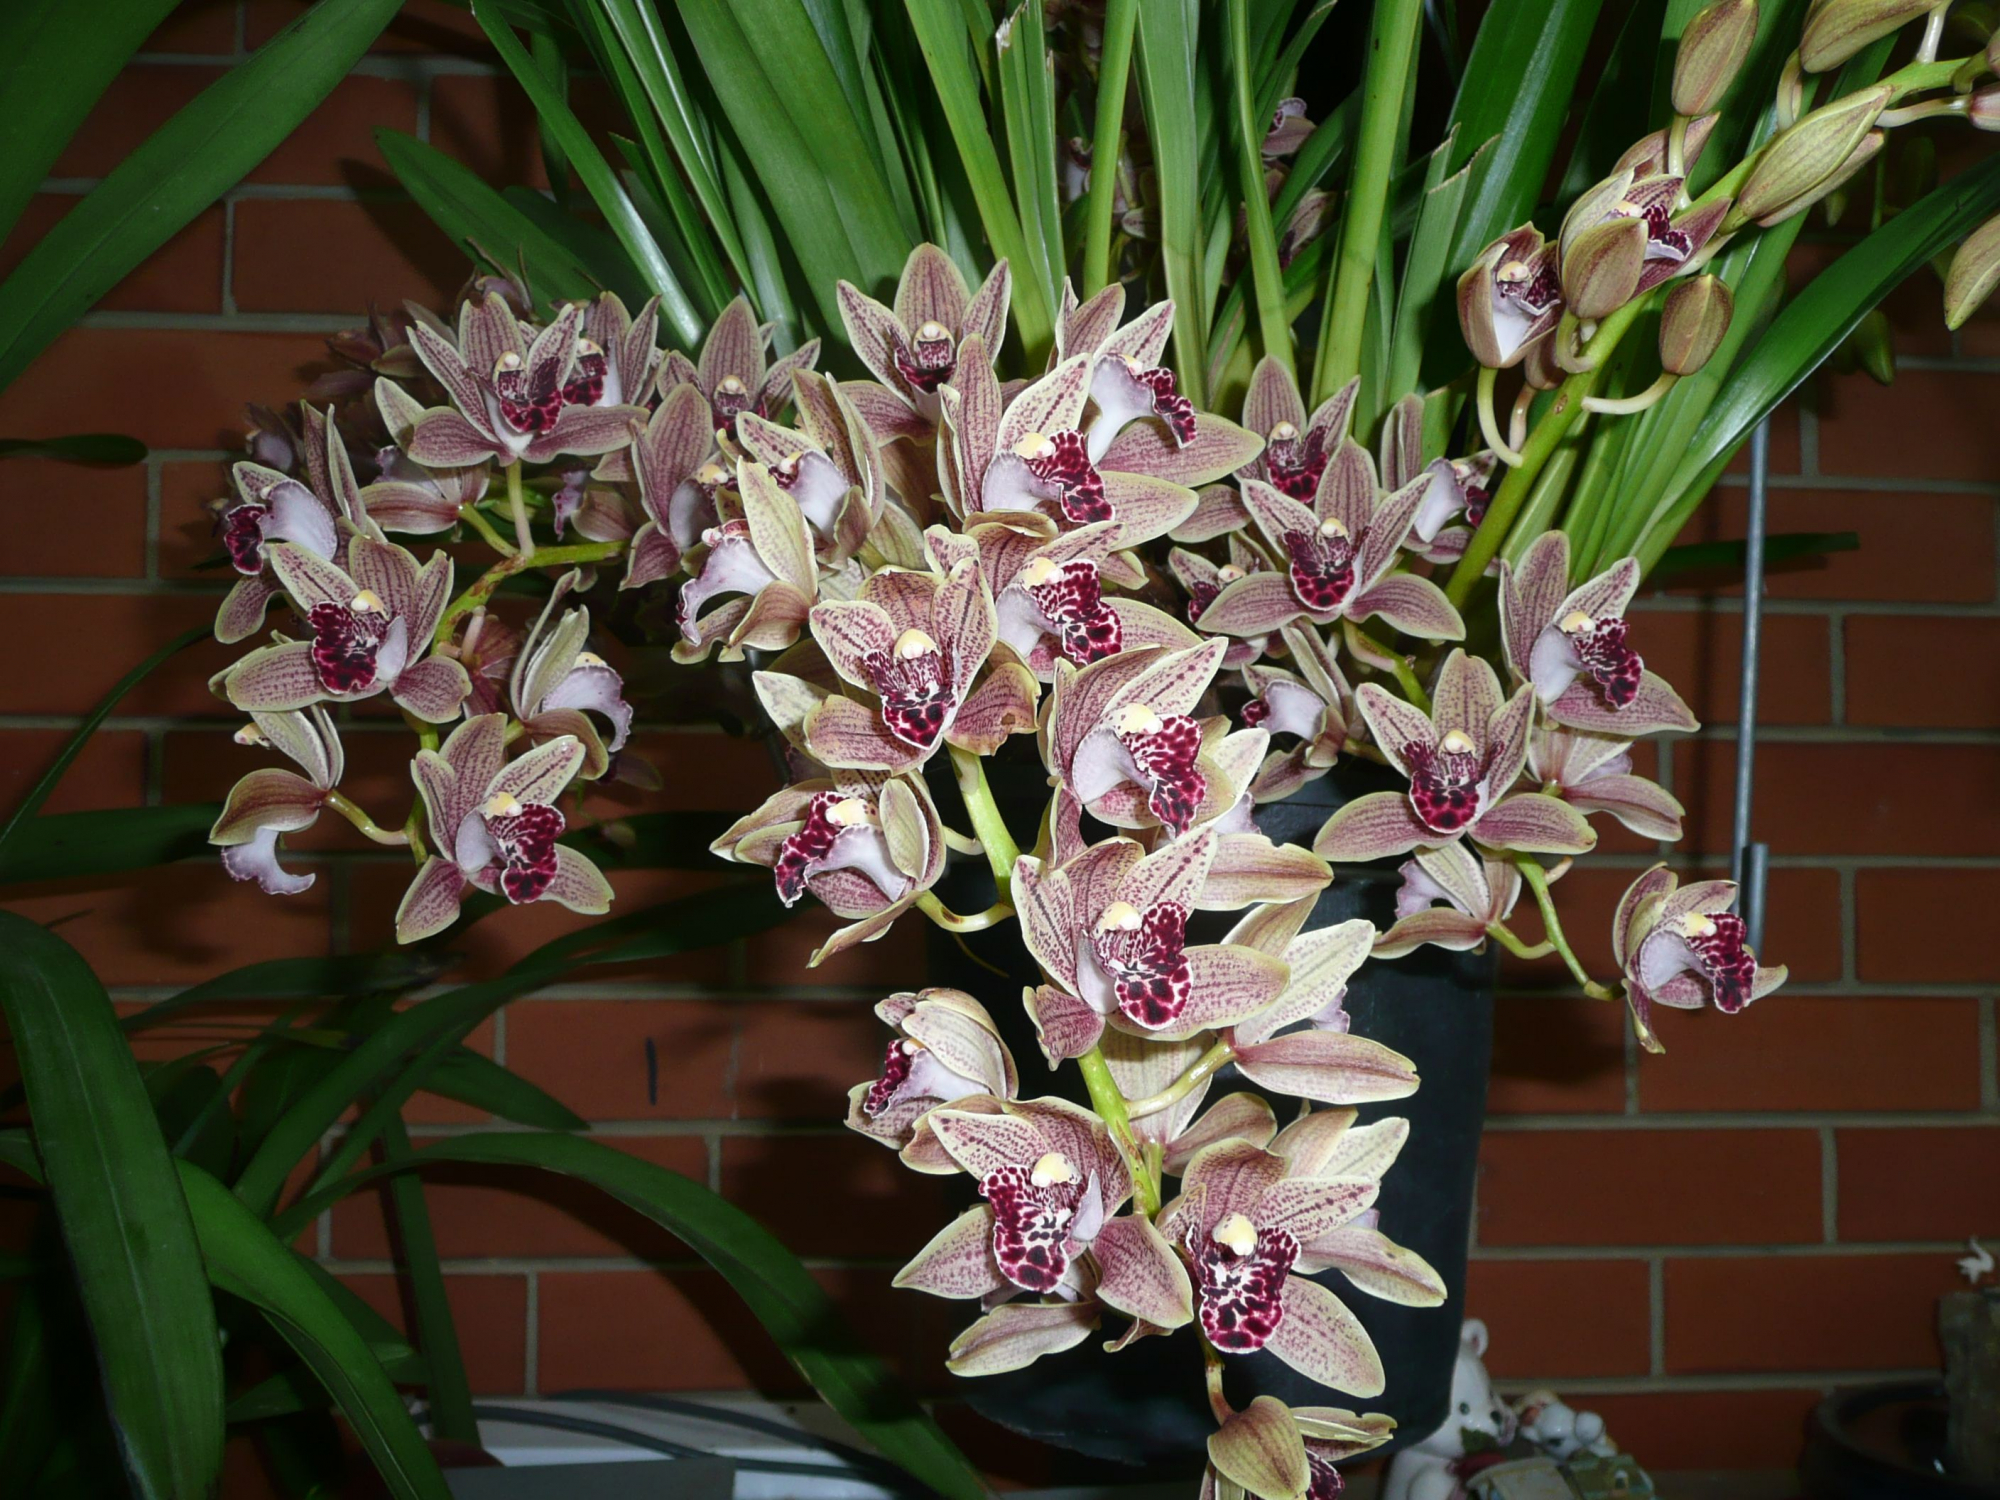 Cymbidium: hindi gaanong mabisa kaysa sa karaniwang mga orchid